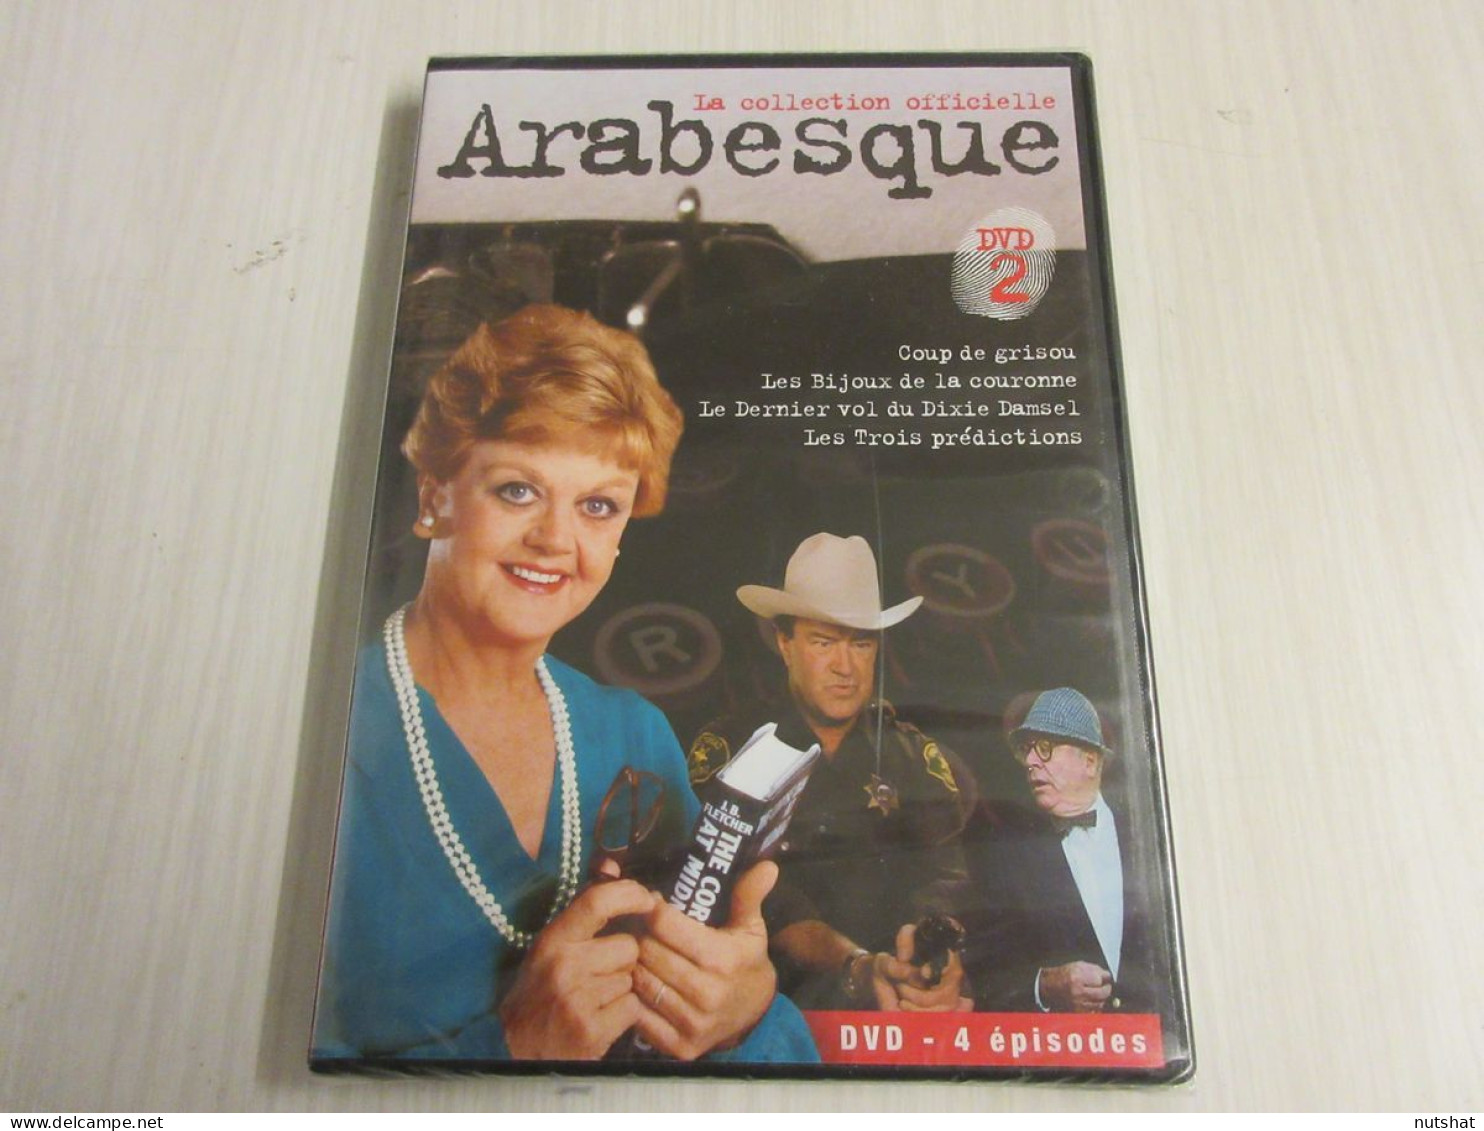 DVD SERIE TV ARABESQUE DVD2 4 épisodes Angela LANSBURY 2009 - Series Y Programas De TV